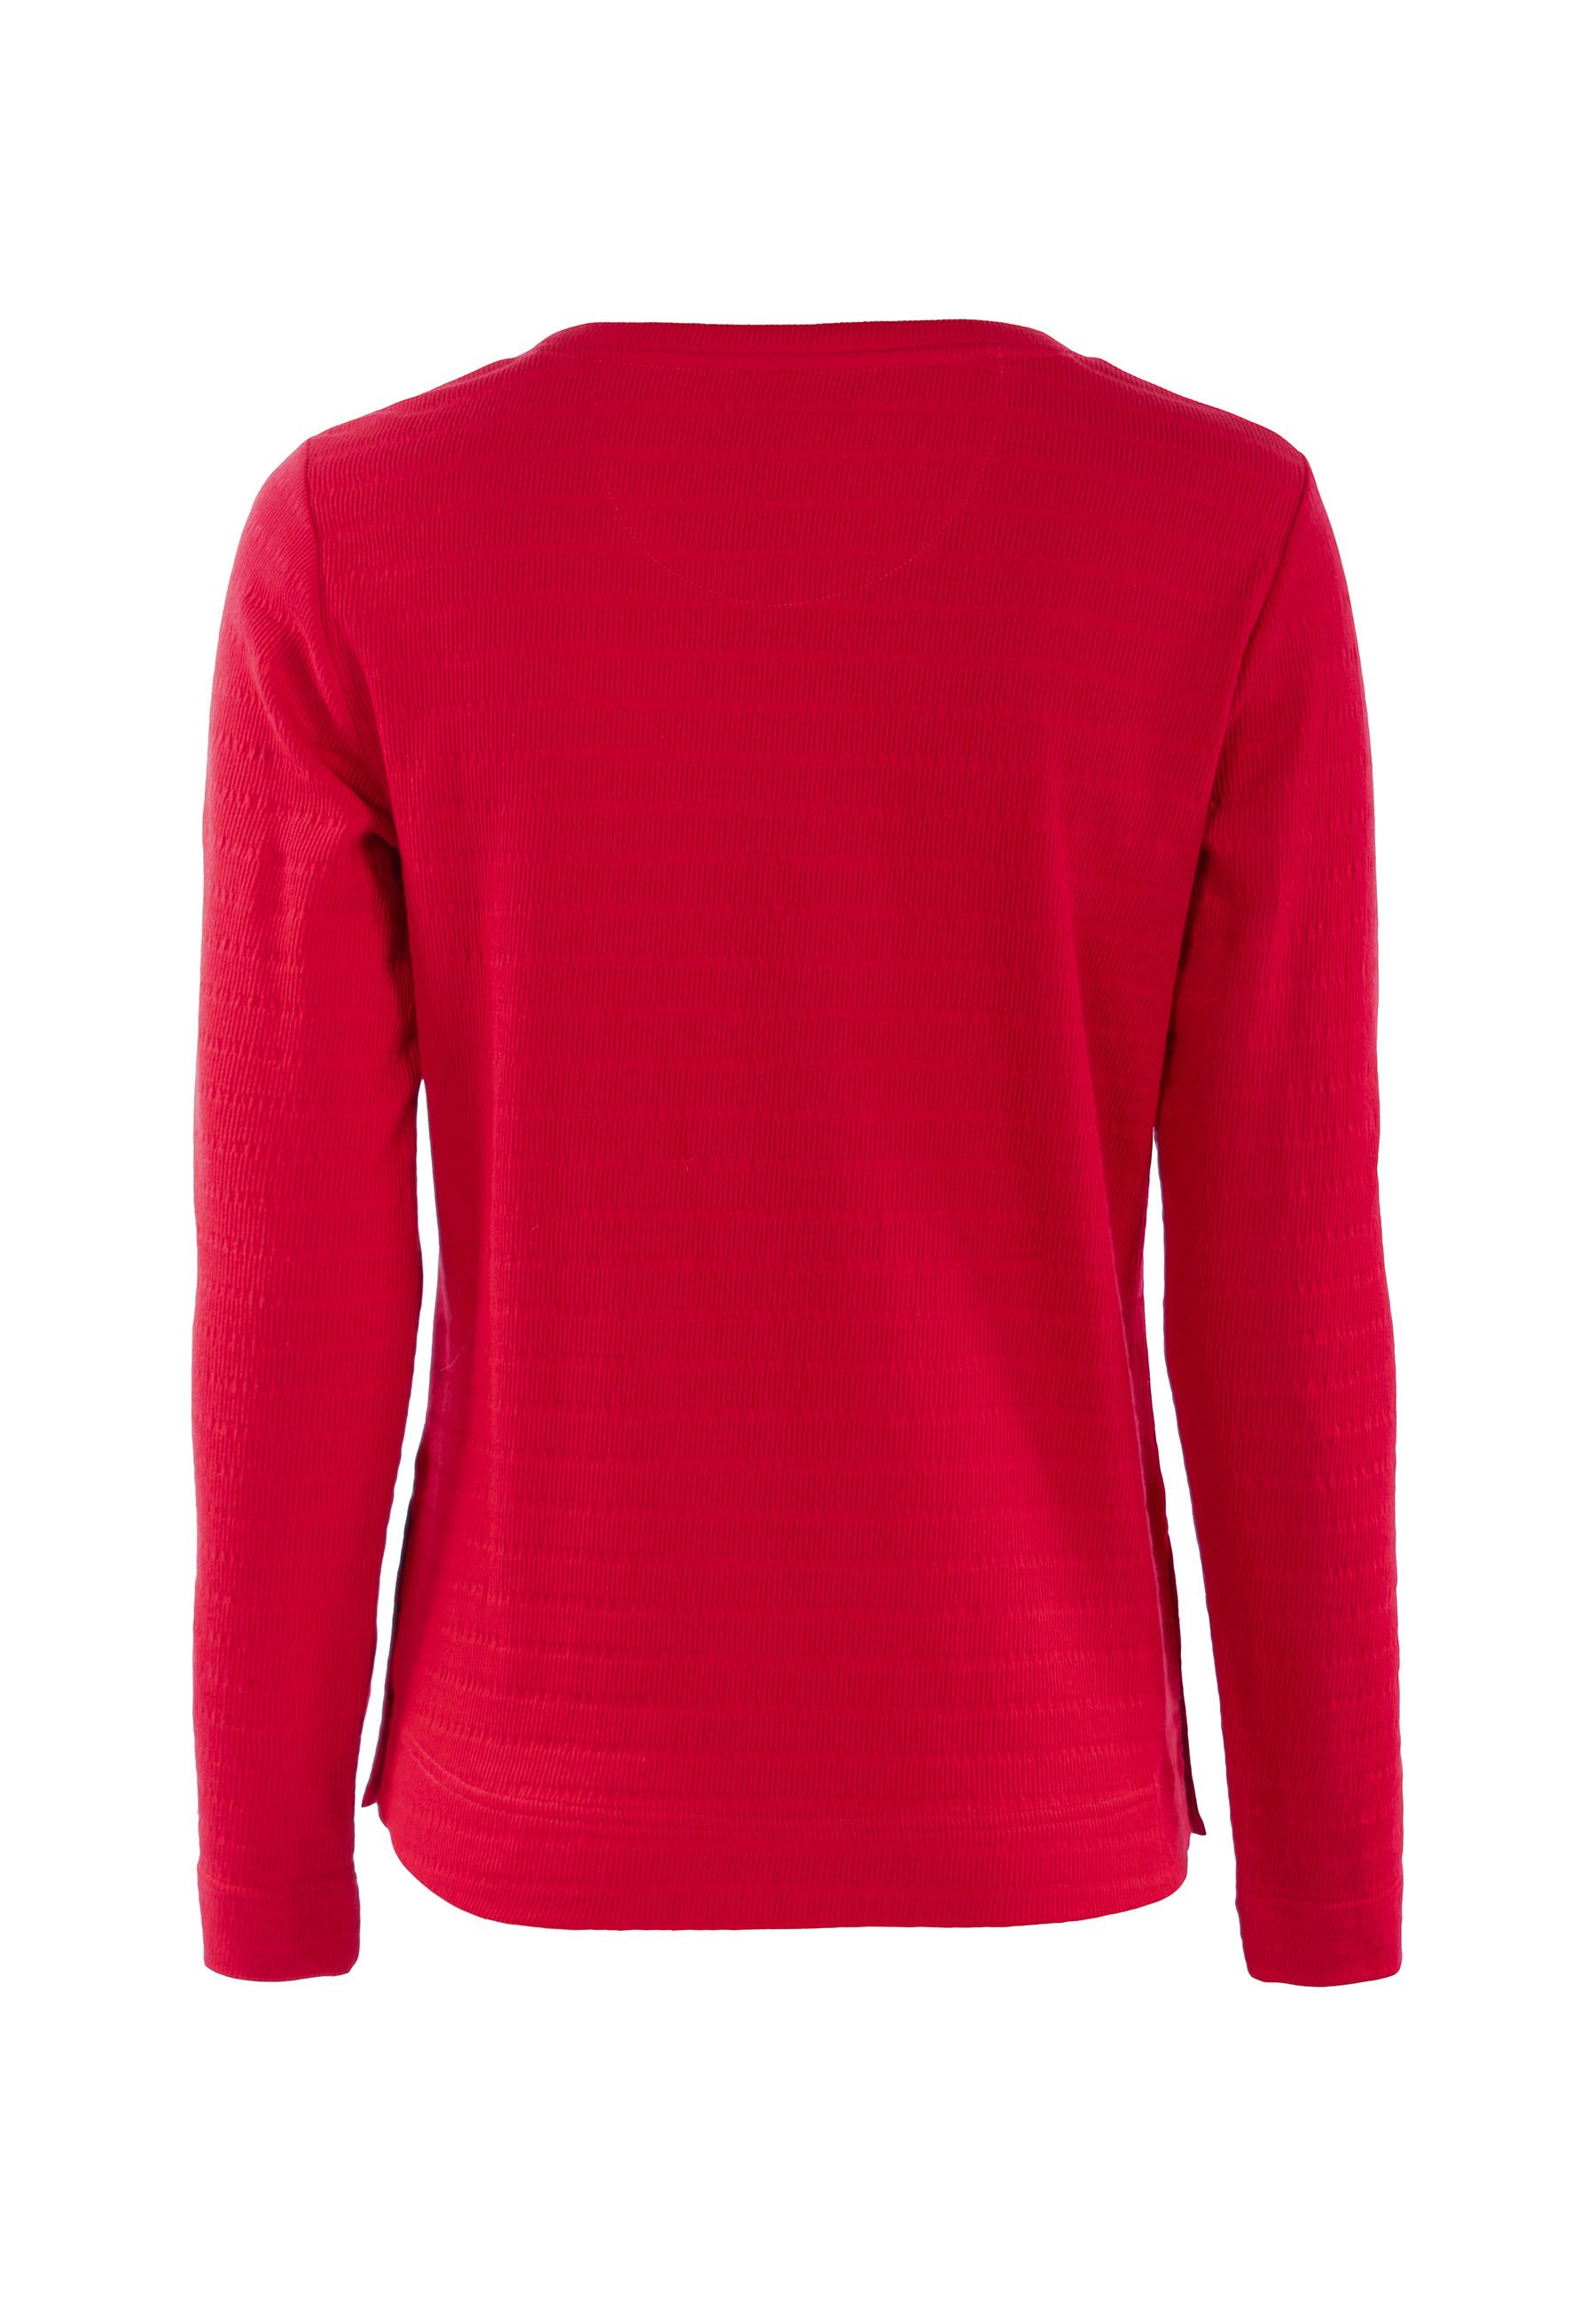 Soquesto Sweatshirt Lara in red und navy